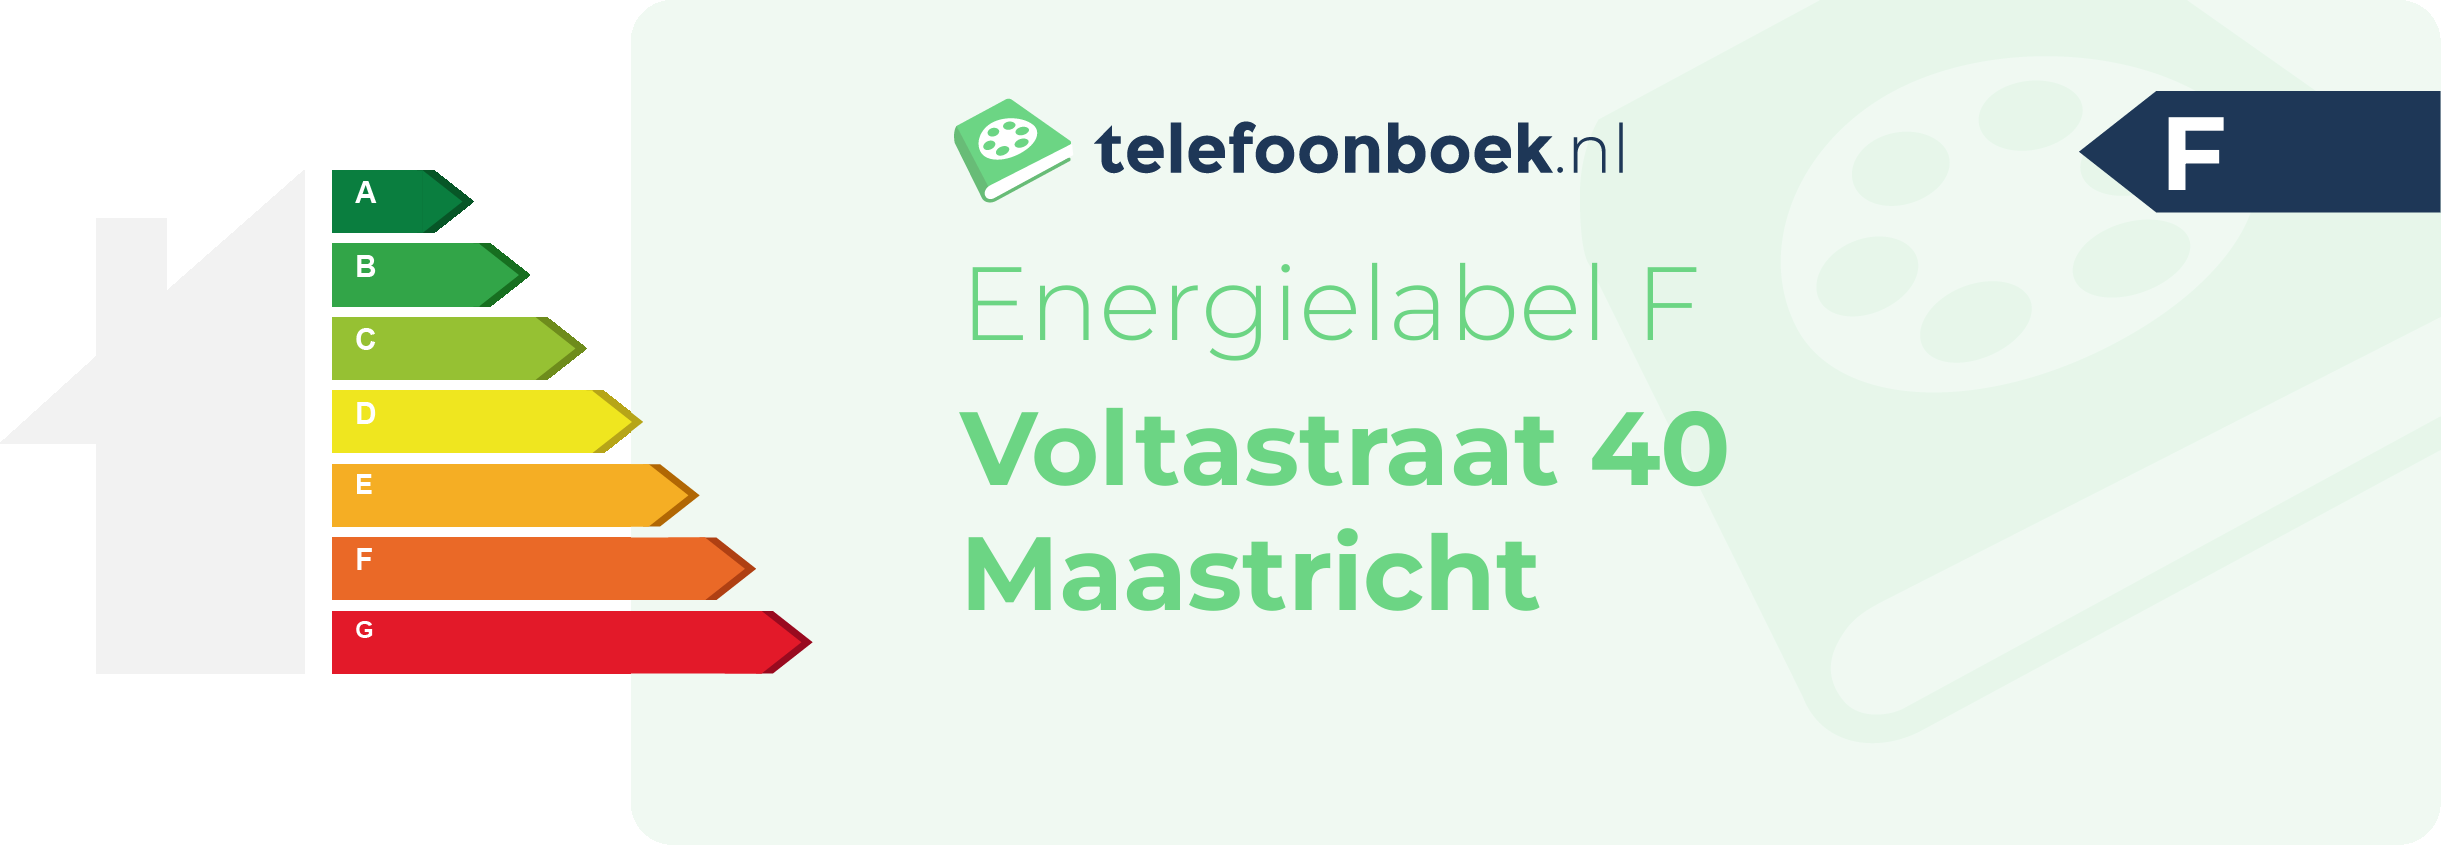 Energielabel Voltastraat 40 Maastricht